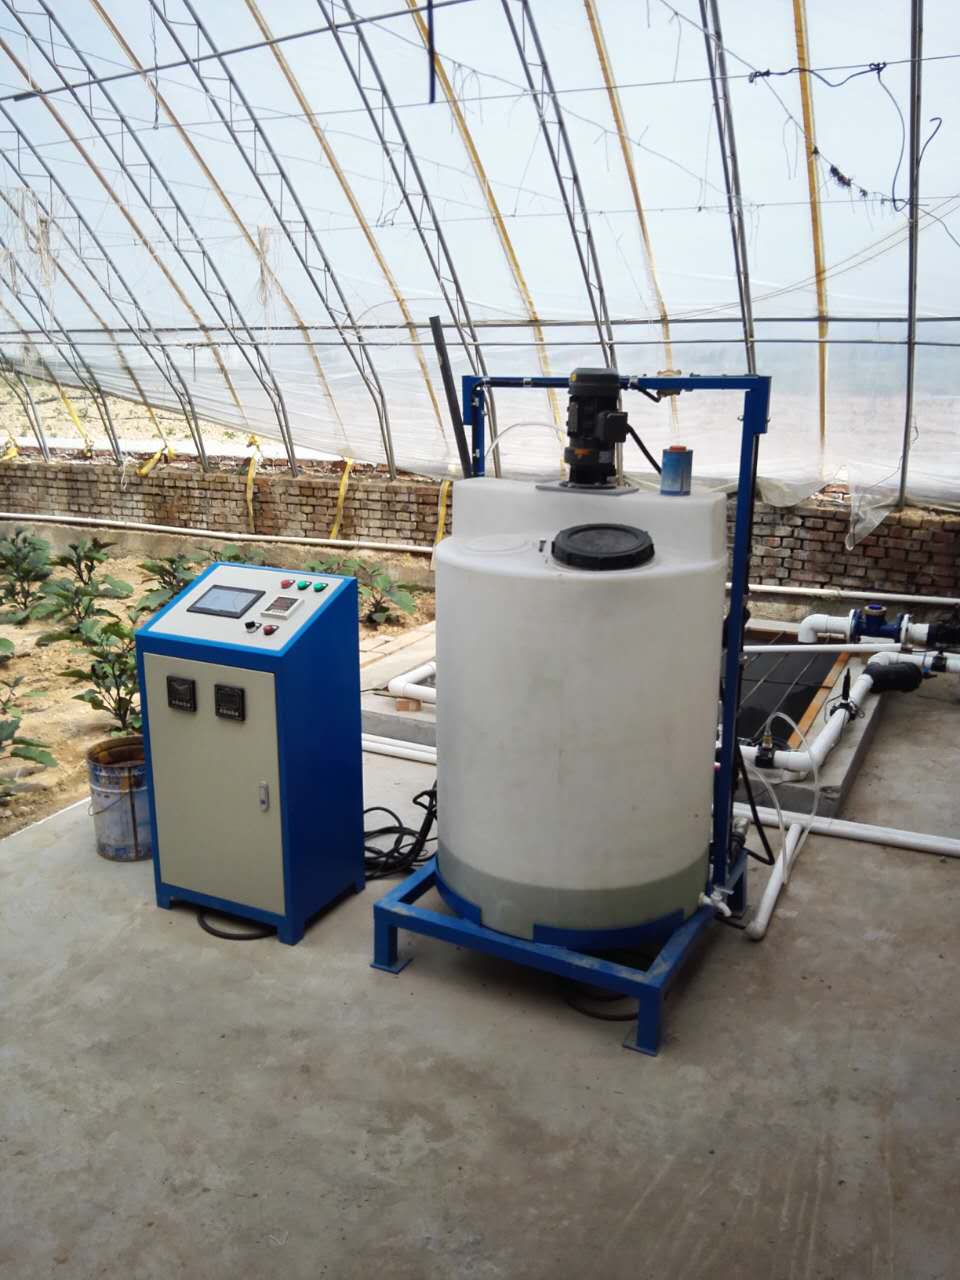 智能温室精准高效的滴灌施肥系统具有哪些优势?